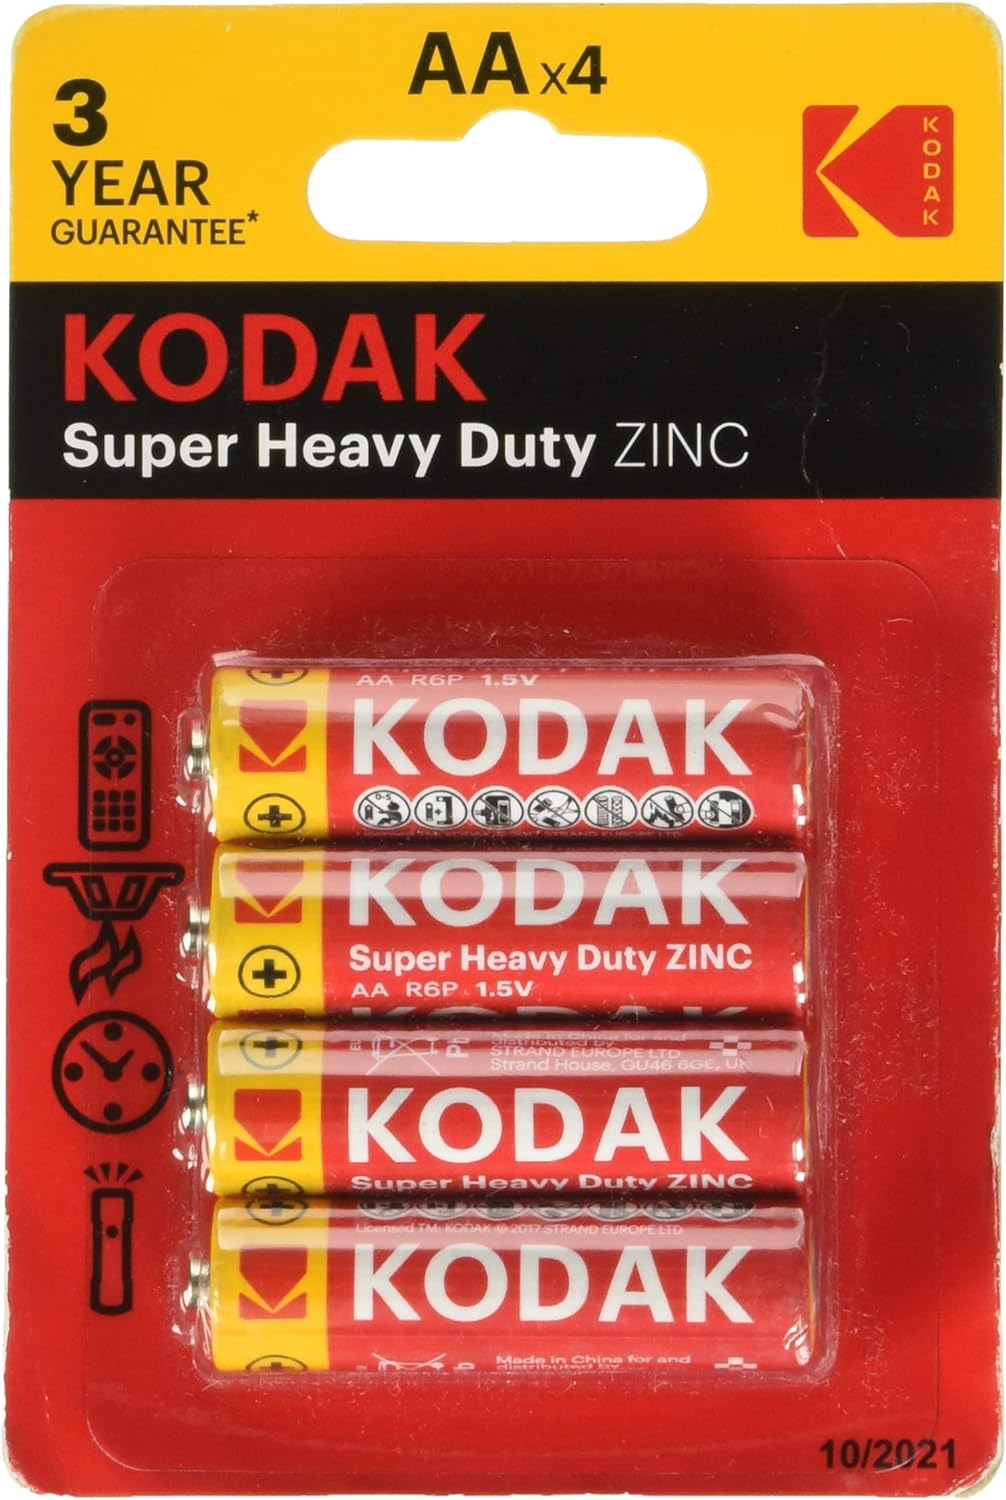 Kodak Extra Heavy Duty Zinc batería, AA